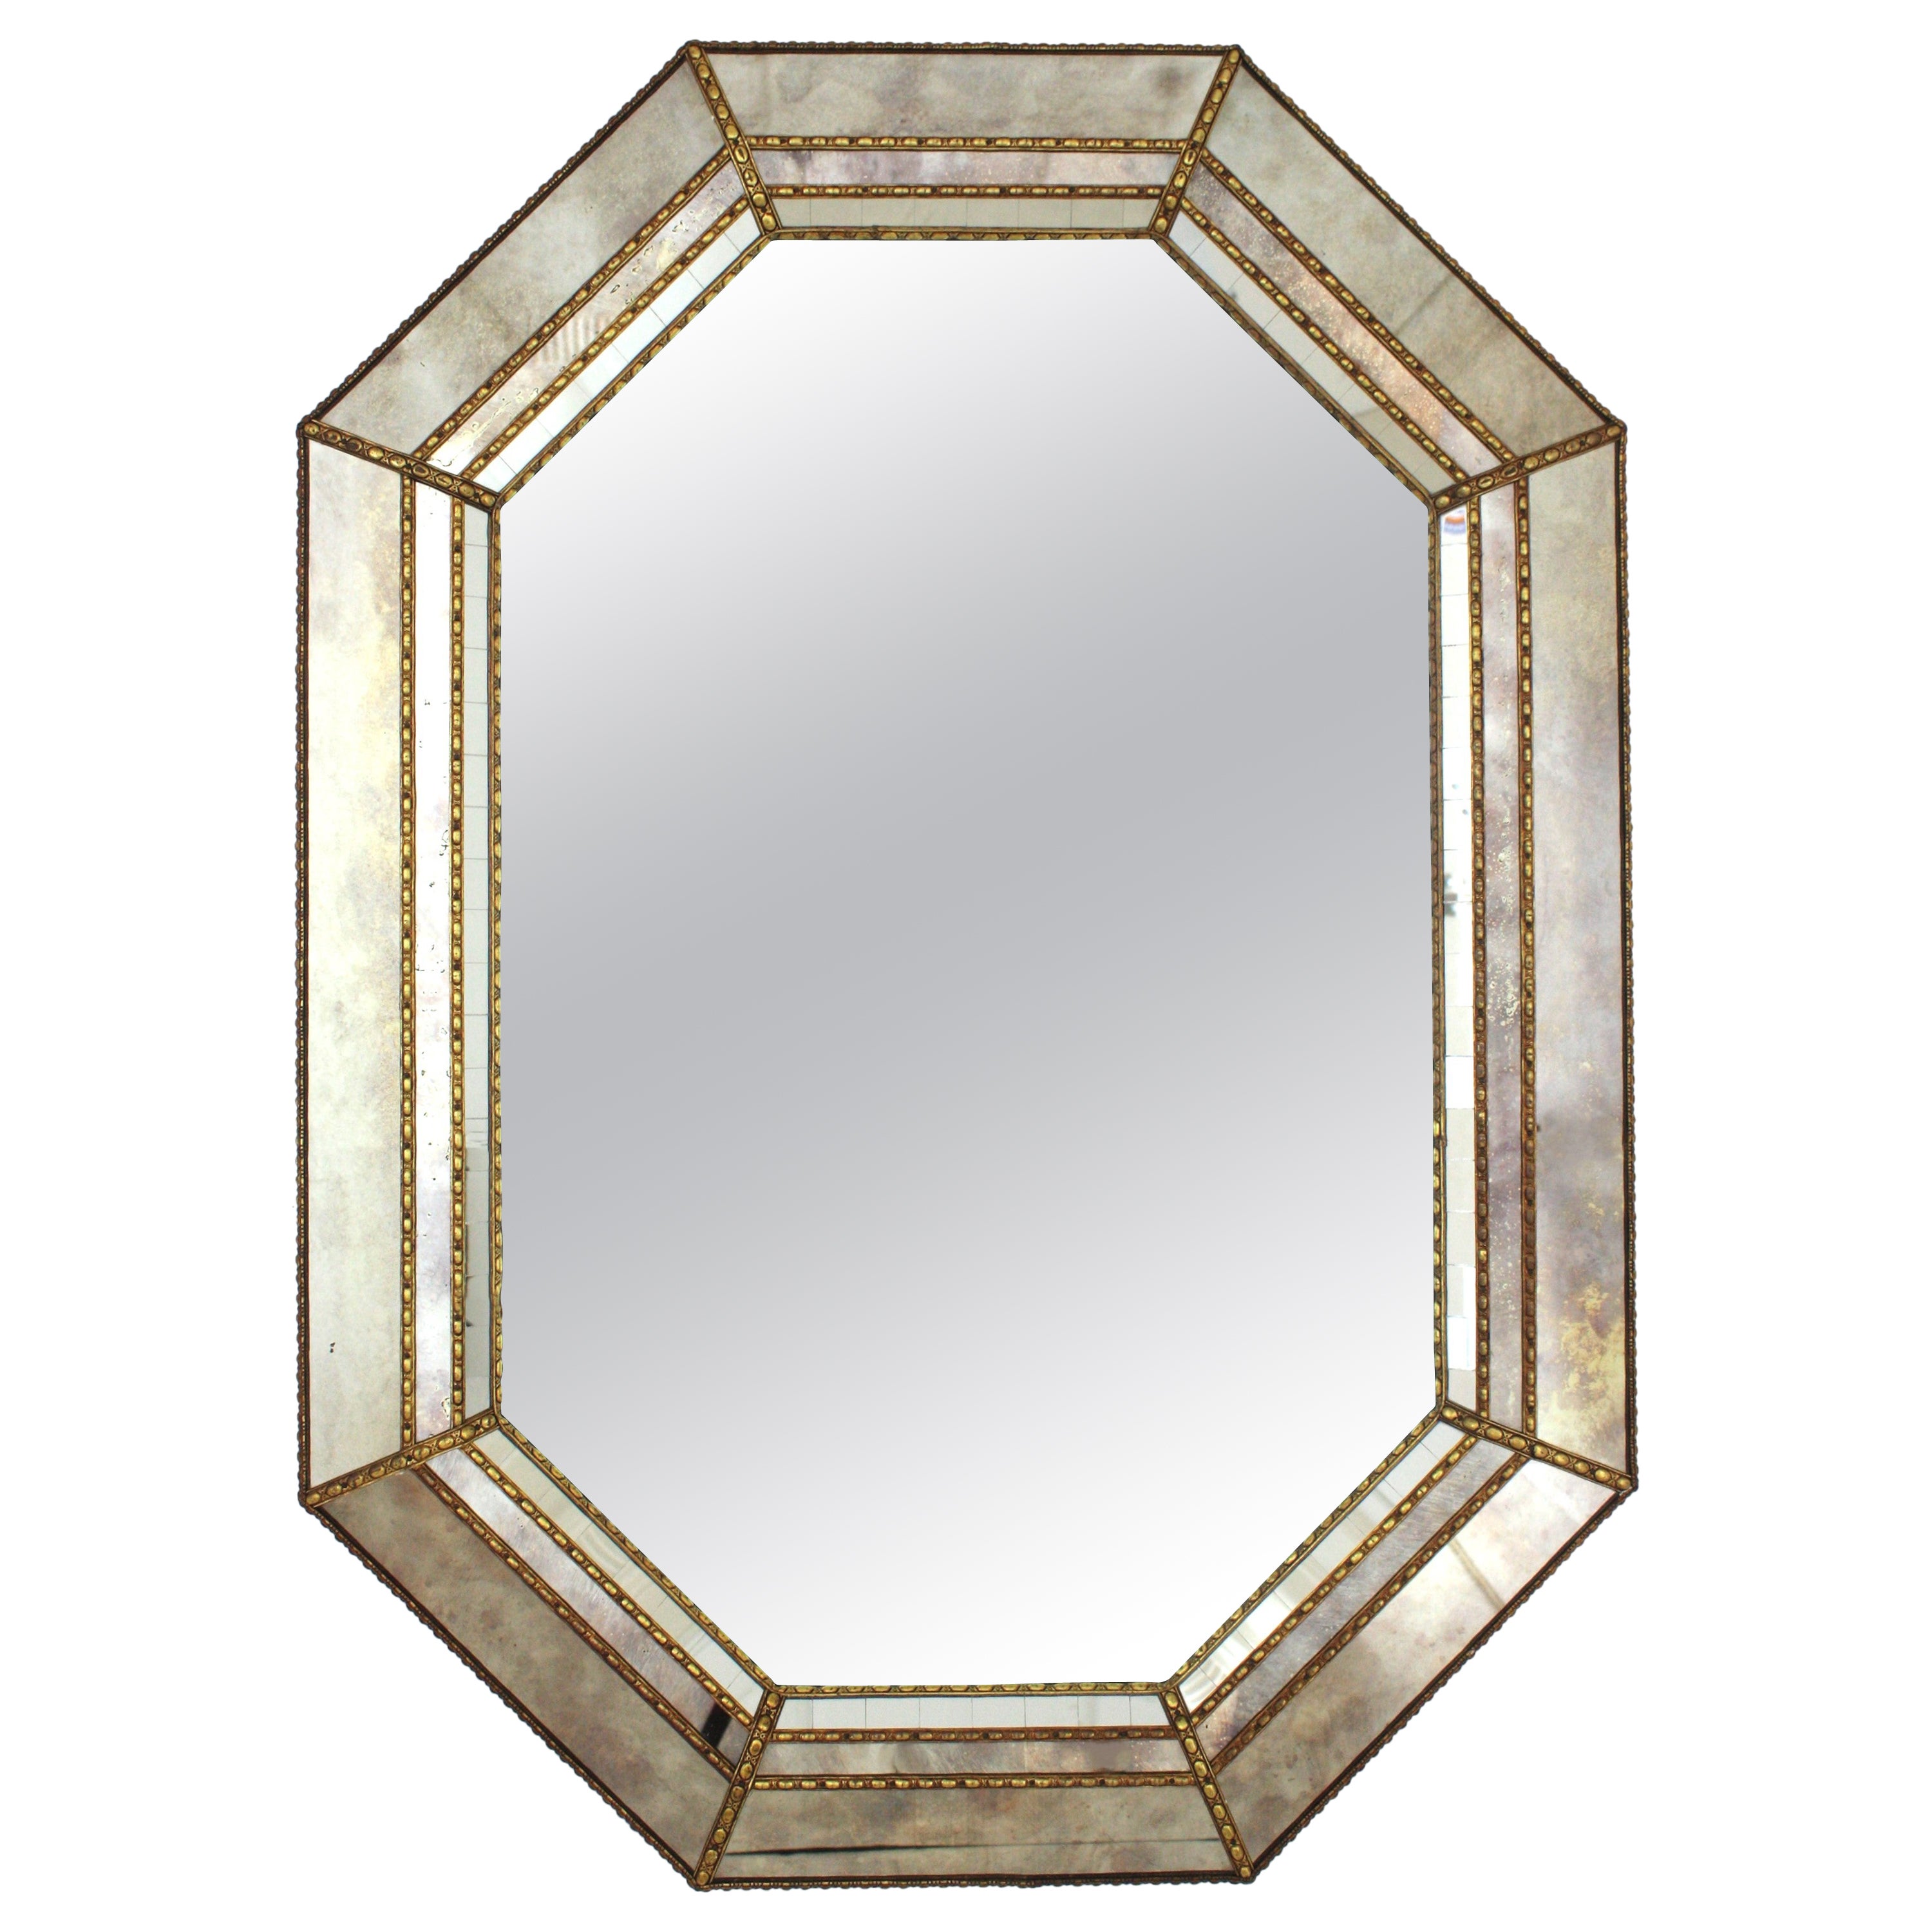 Octagonal Venetian Style Mirror, Golden Grey Glass Frame & Brass Details